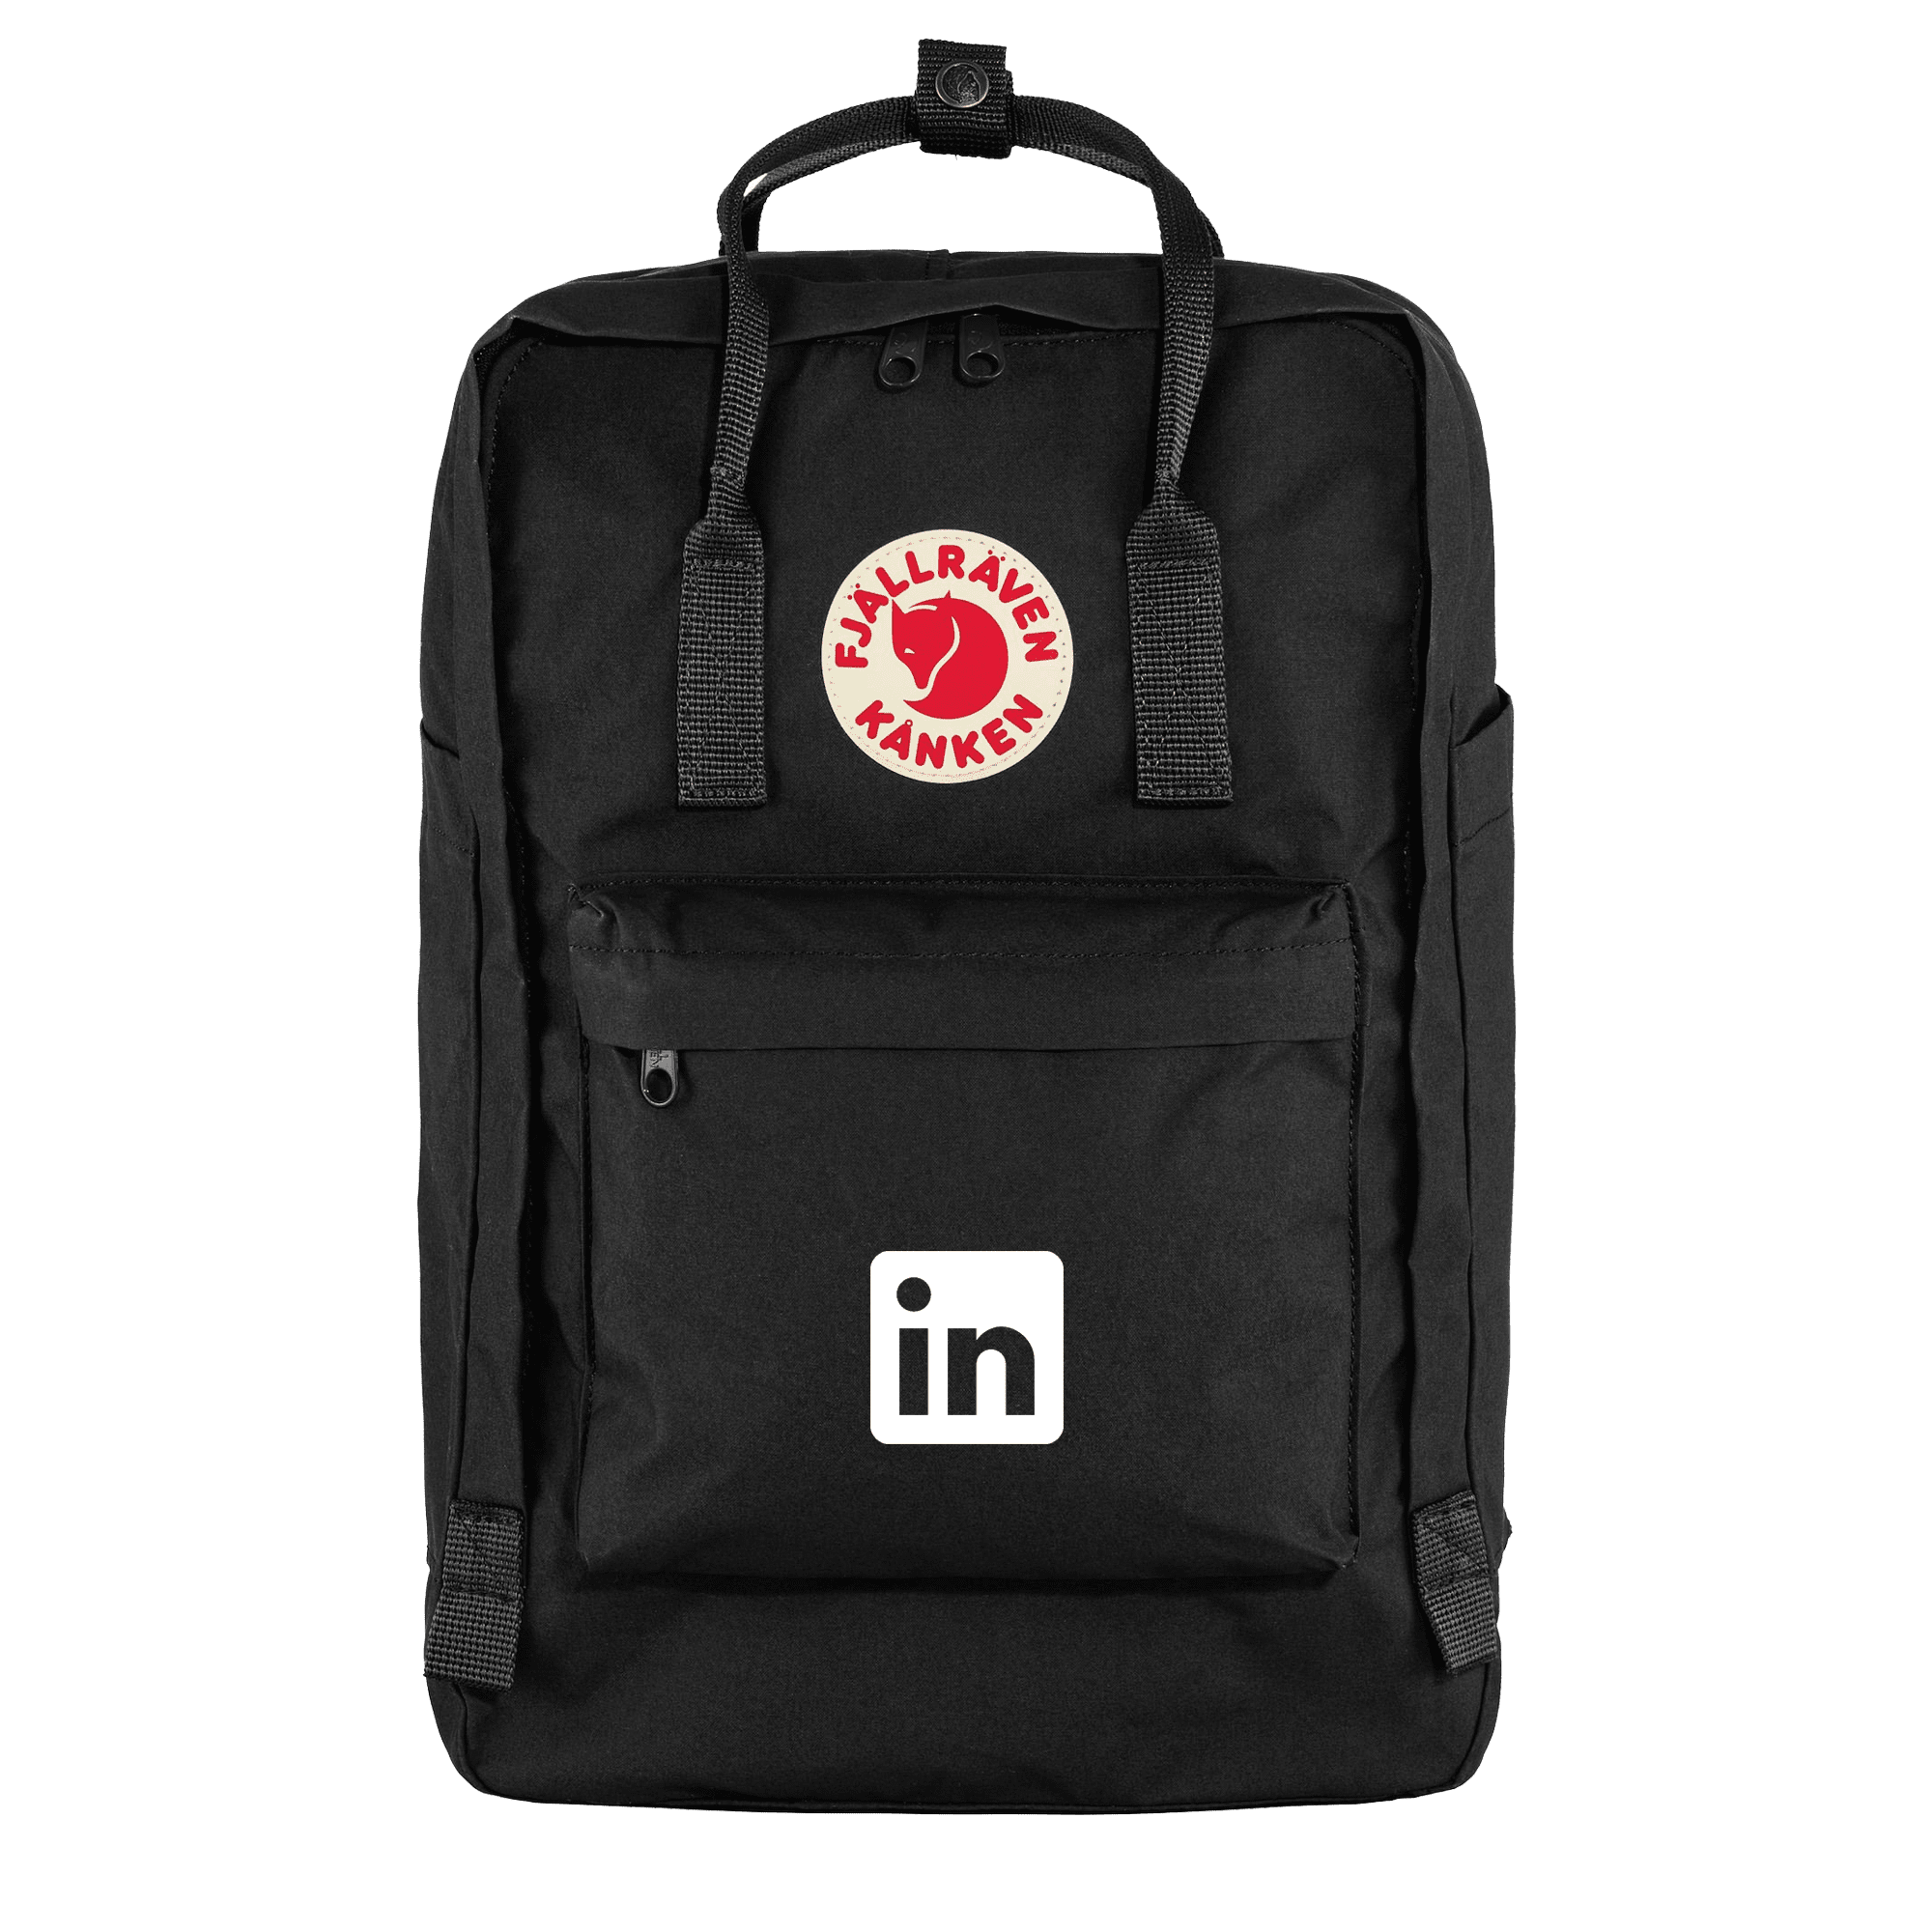 Kanken Branded Backpack